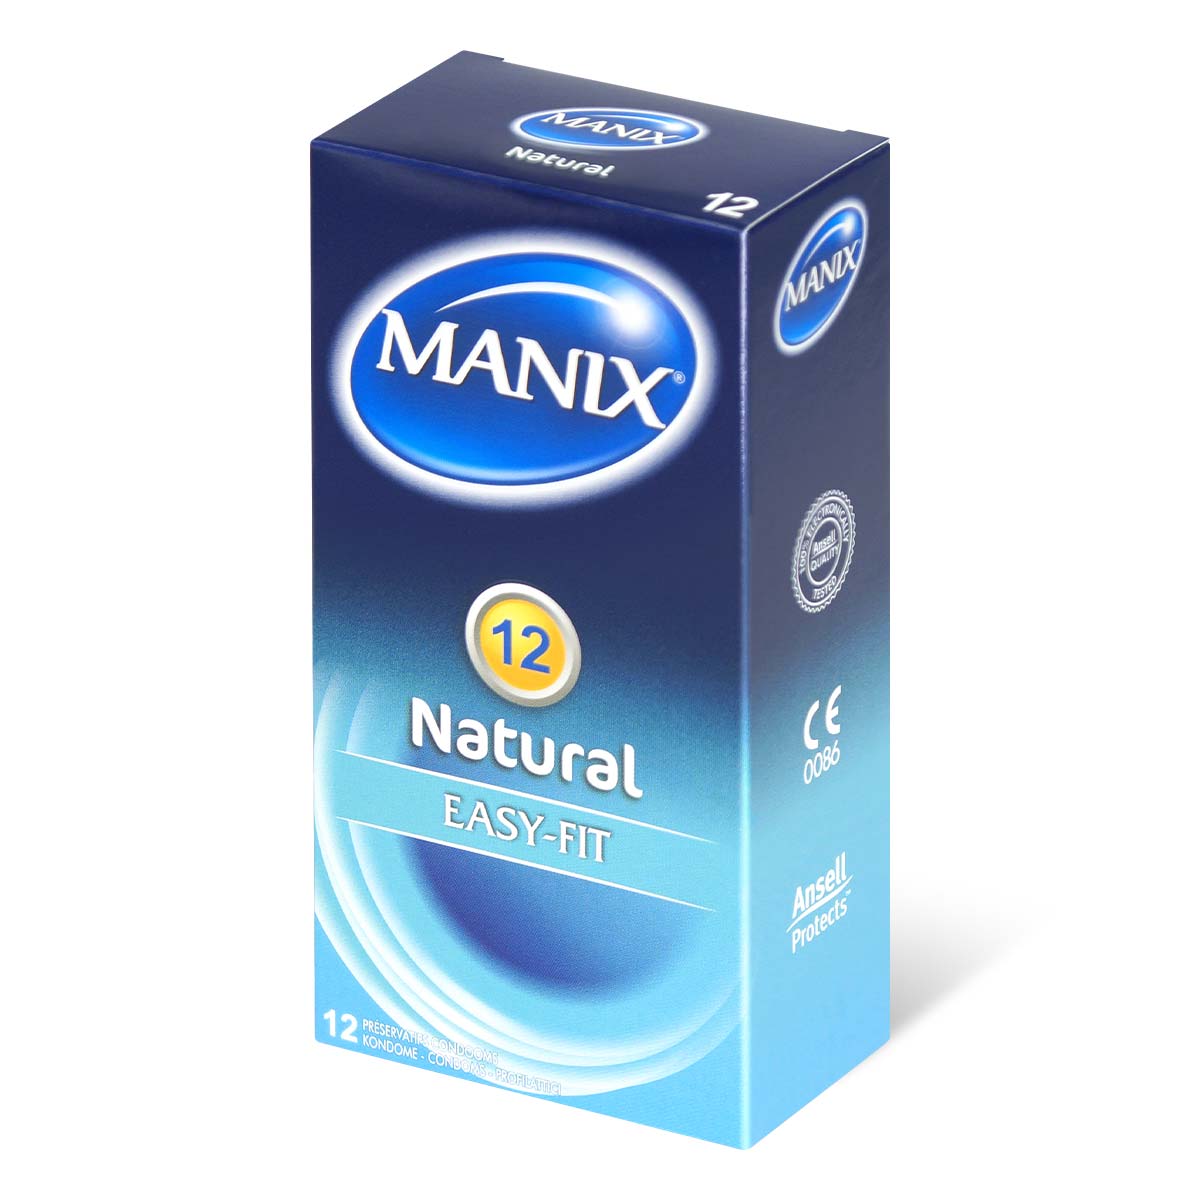 Manix 自然裝着 12 片裝 乳膠安全套-p_1